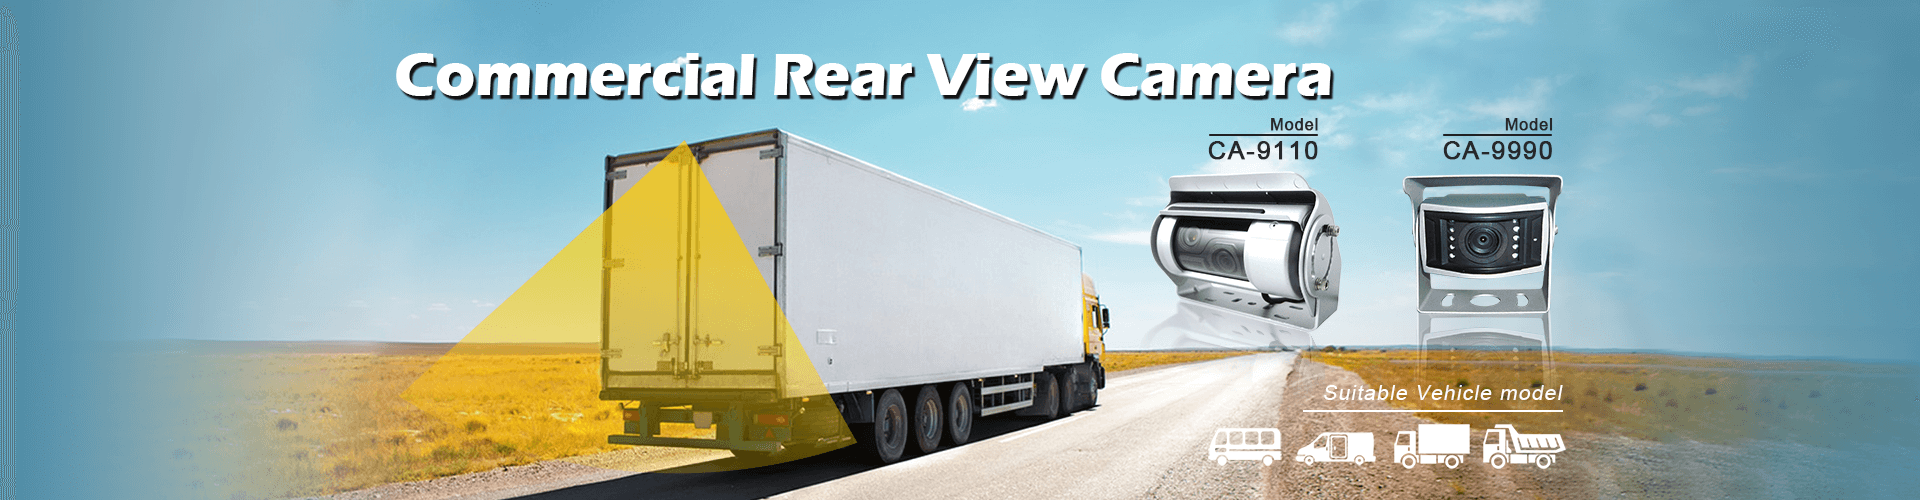 Câmeras de retrovisores de alta qualidade para veículos comerciais